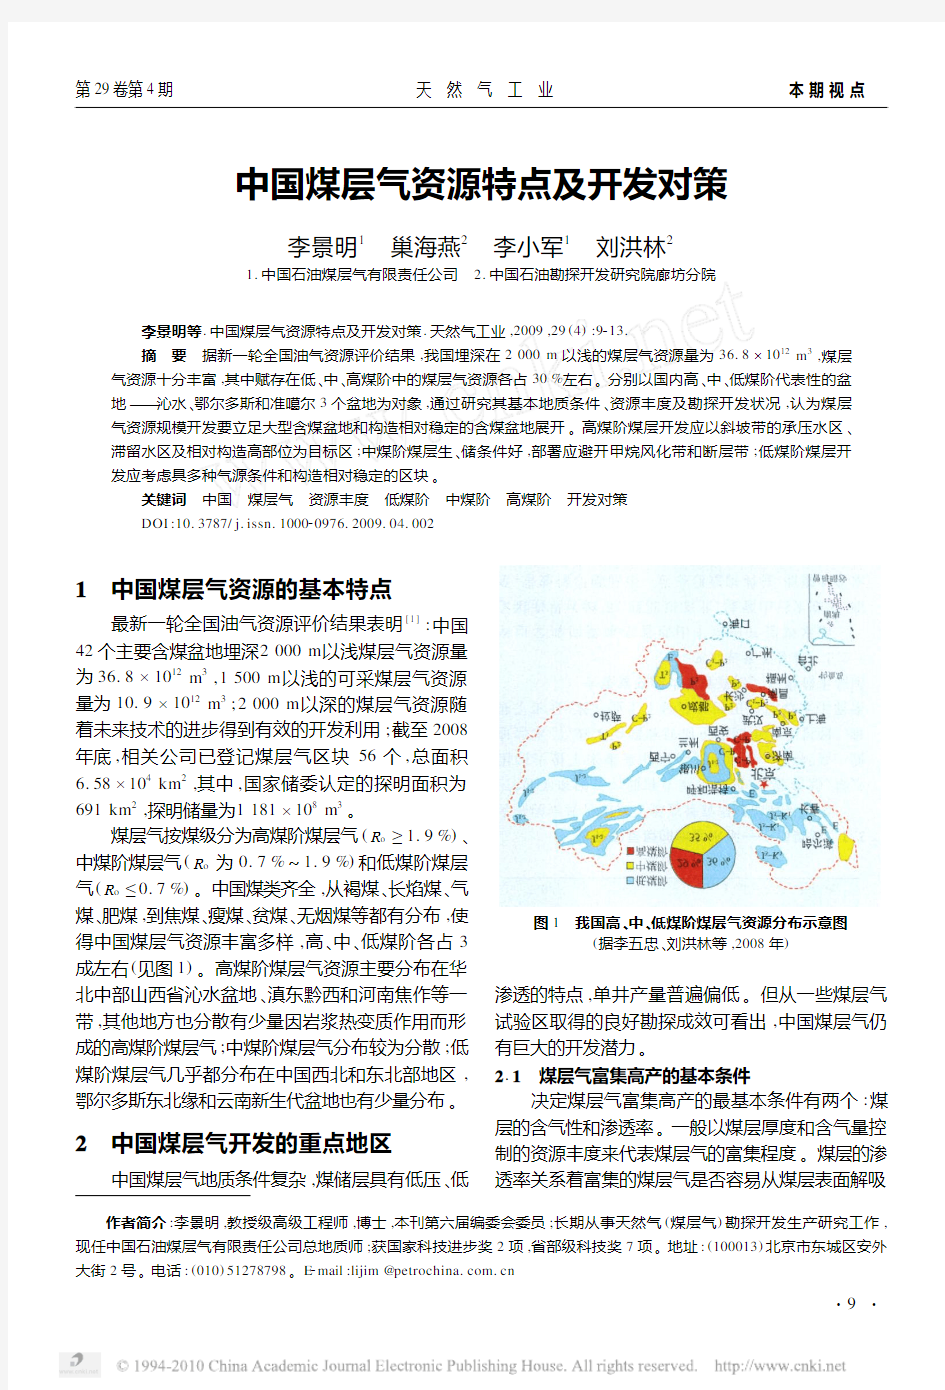 中国煤层气资源特点及开发对策